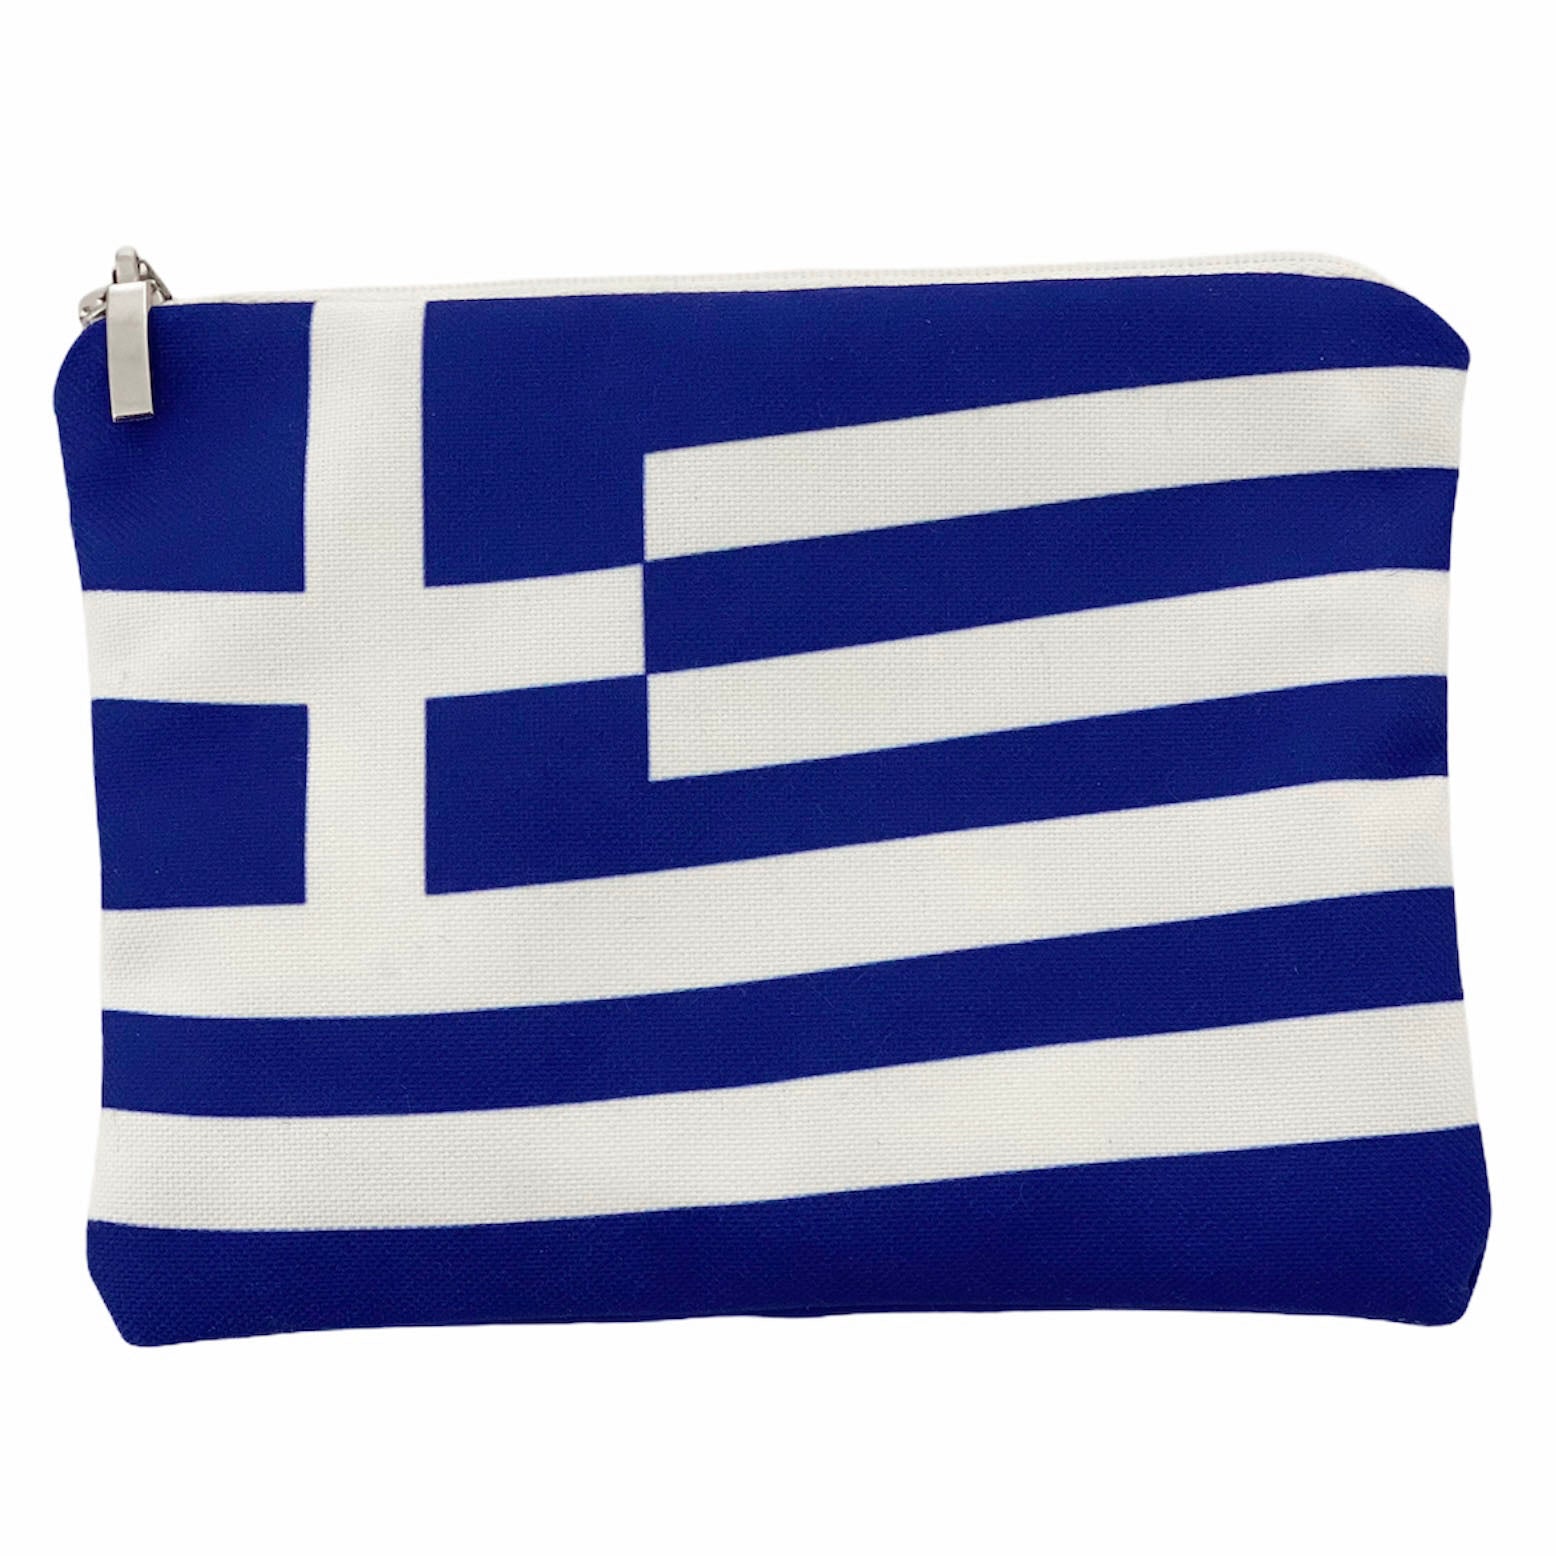 Greece 2021- Hellas flagThiki bag